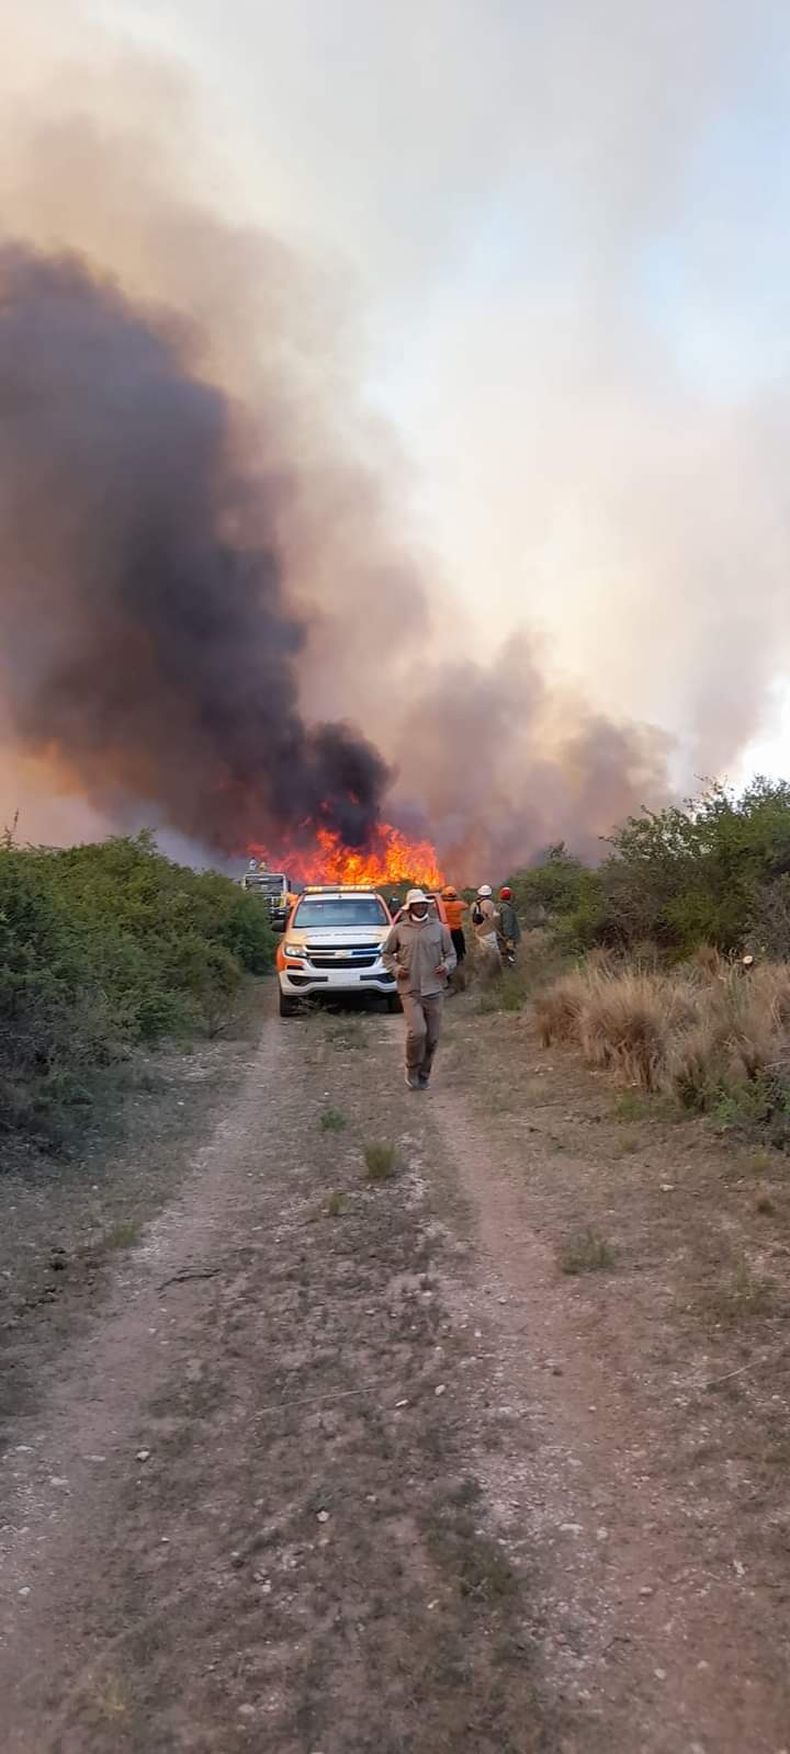 Incendios forestales sin tregua: hay focos activos en nueve provincias